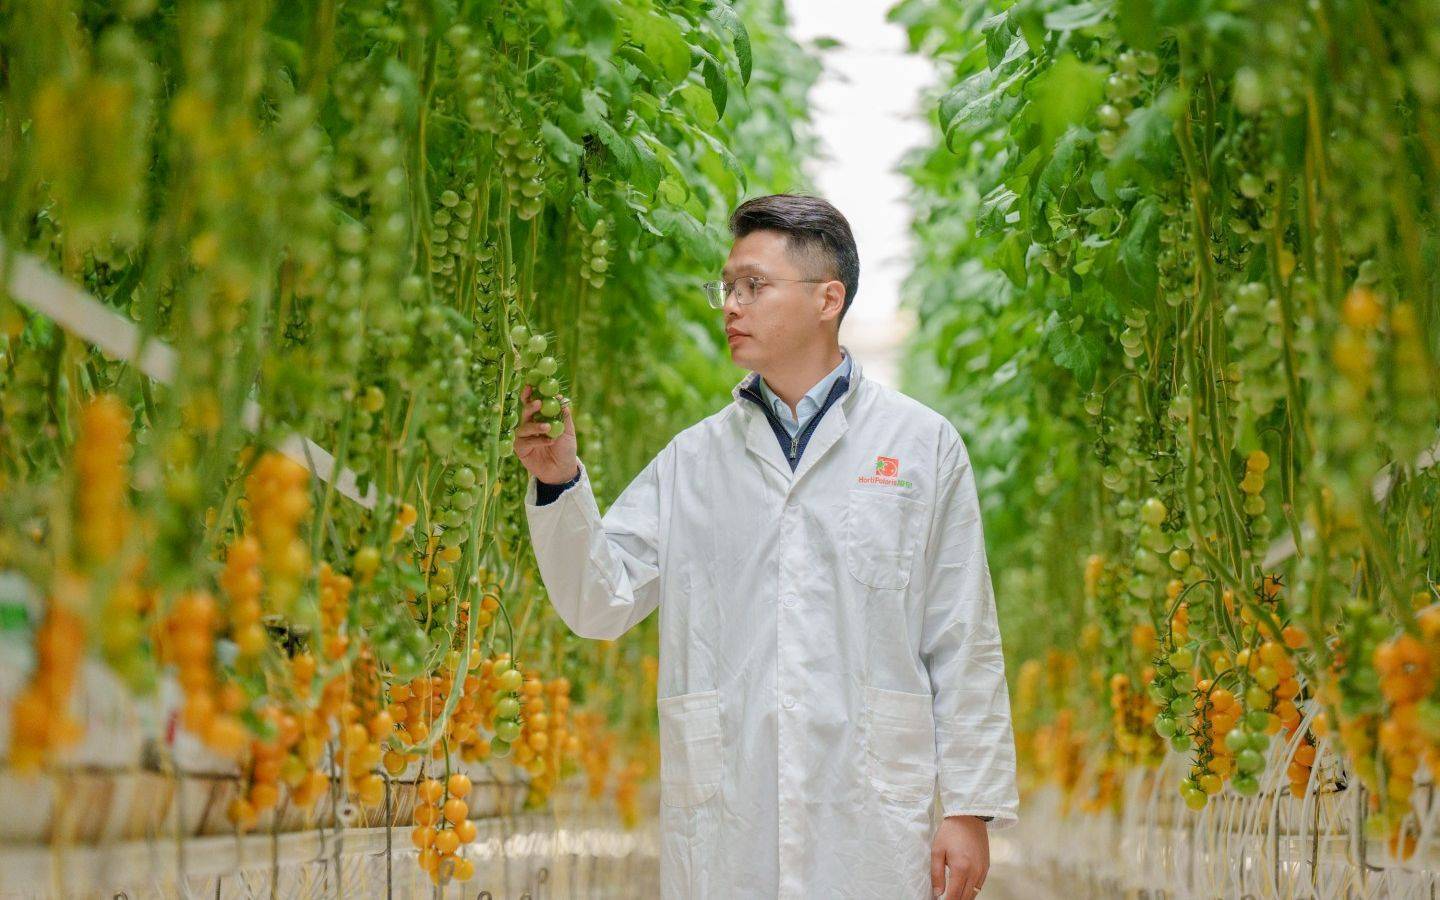 Xu hướng làm nông ‘hi-tech’ của giới trẻ Trung Quốc: không cần đất hay nắng mưa, chỉ cần thuật toán và AI là cho cây trĩu quả - Ảnh 3.